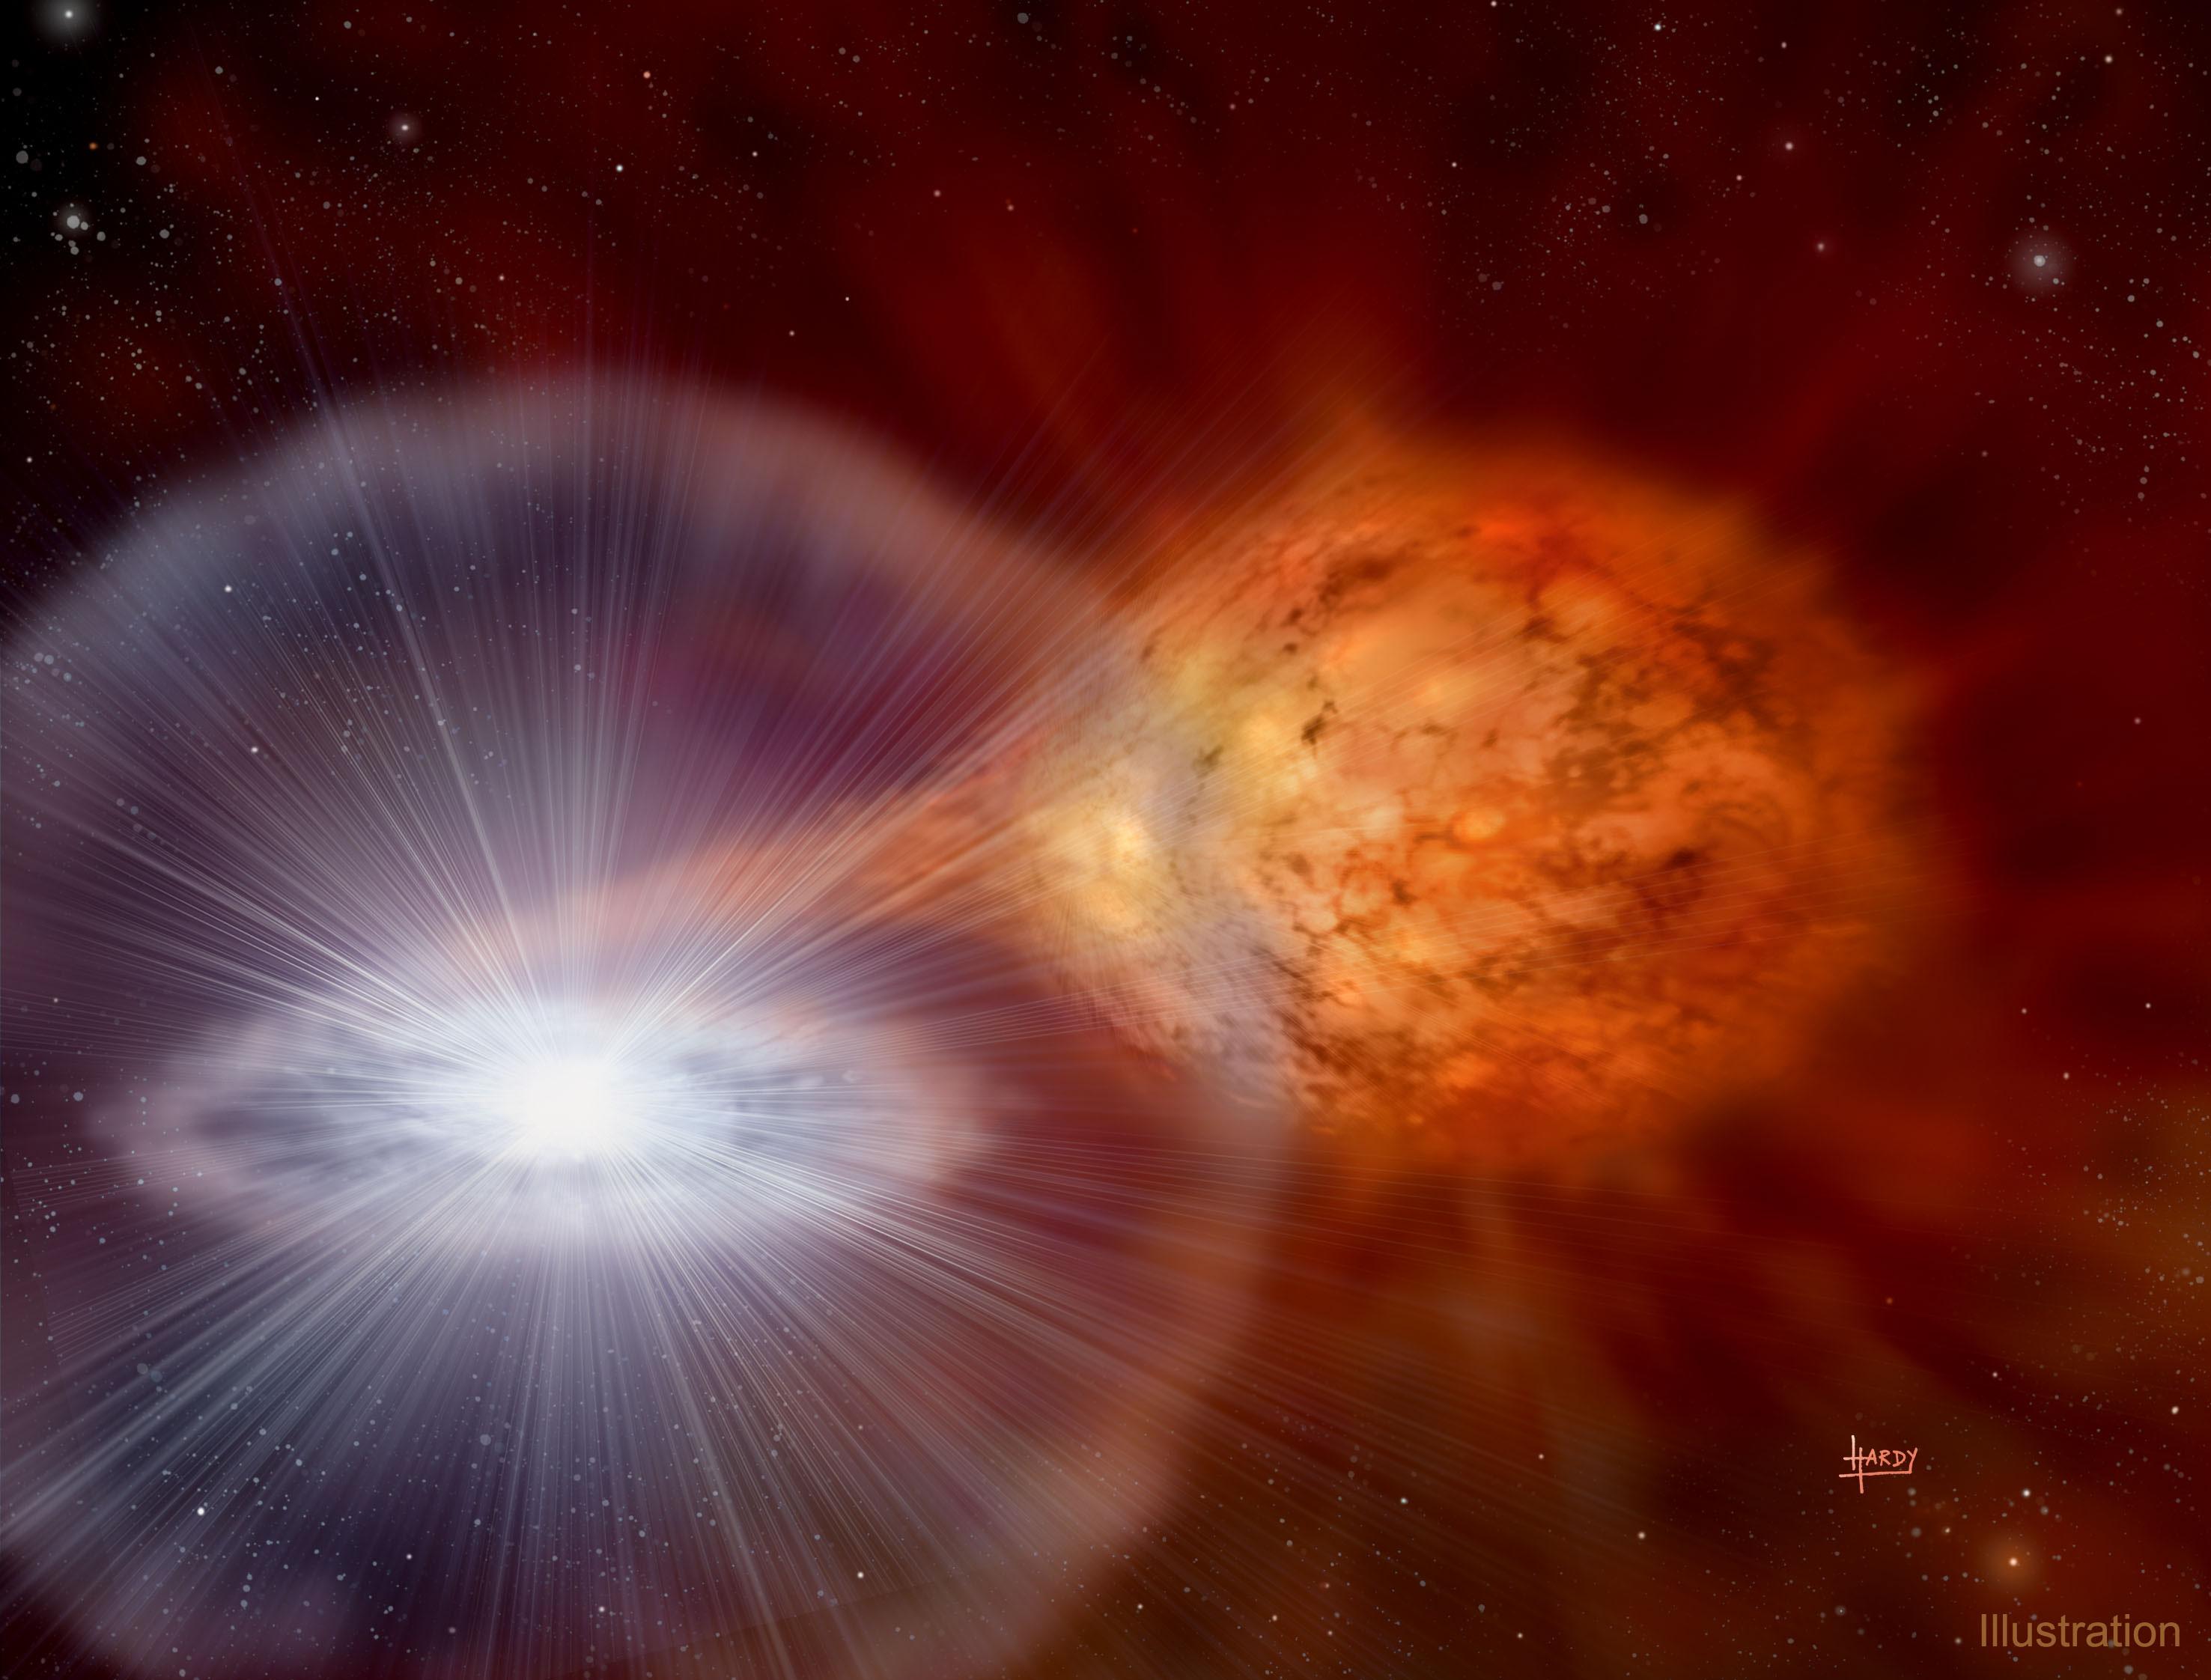 رسم توضيحي لنظام النجوم الثنائي RS الحوّاء أثناء انفجار مسبّب لتشكّل مستعر.